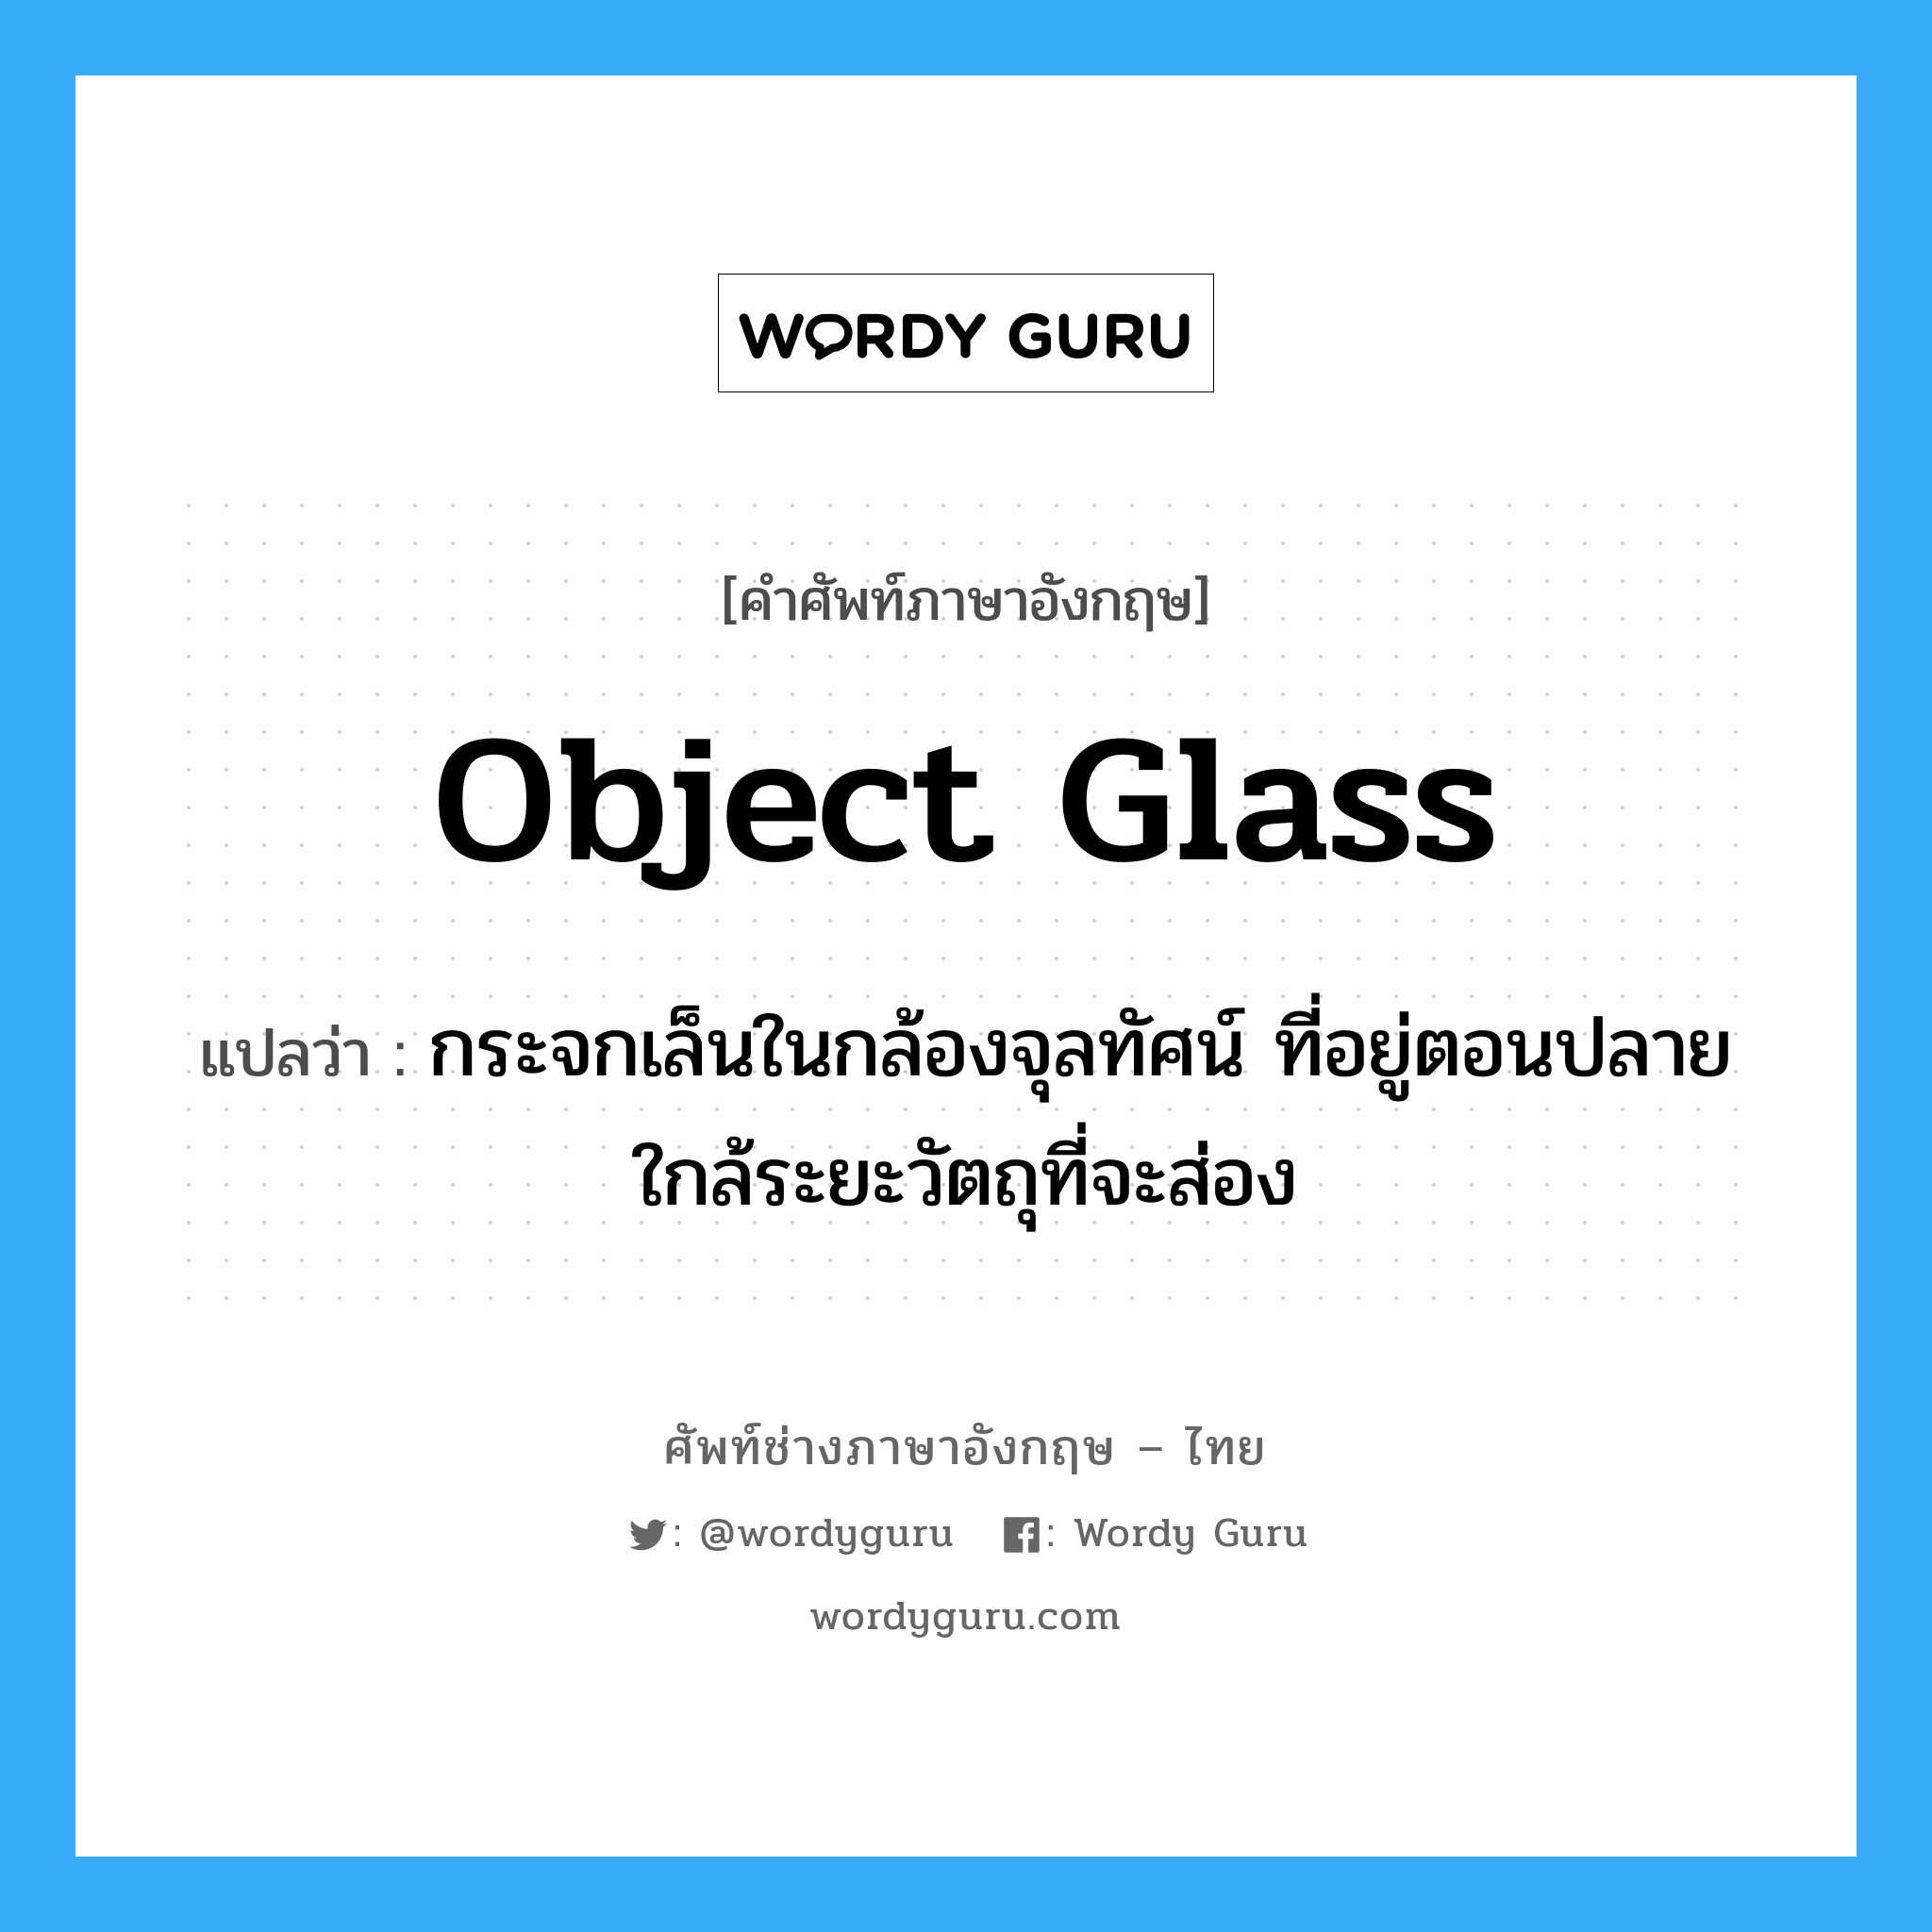 object glass แปลว่า?, คำศัพท์ช่างภาษาอังกฤษ - ไทย object glass คำศัพท์ภาษาอังกฤษ object glass แปลว่า กระจกเล็นในกล้องจุลทัศน์ ที่อยู่ตอนปลายใกล้ระยะวัตถุที่จะส่อง